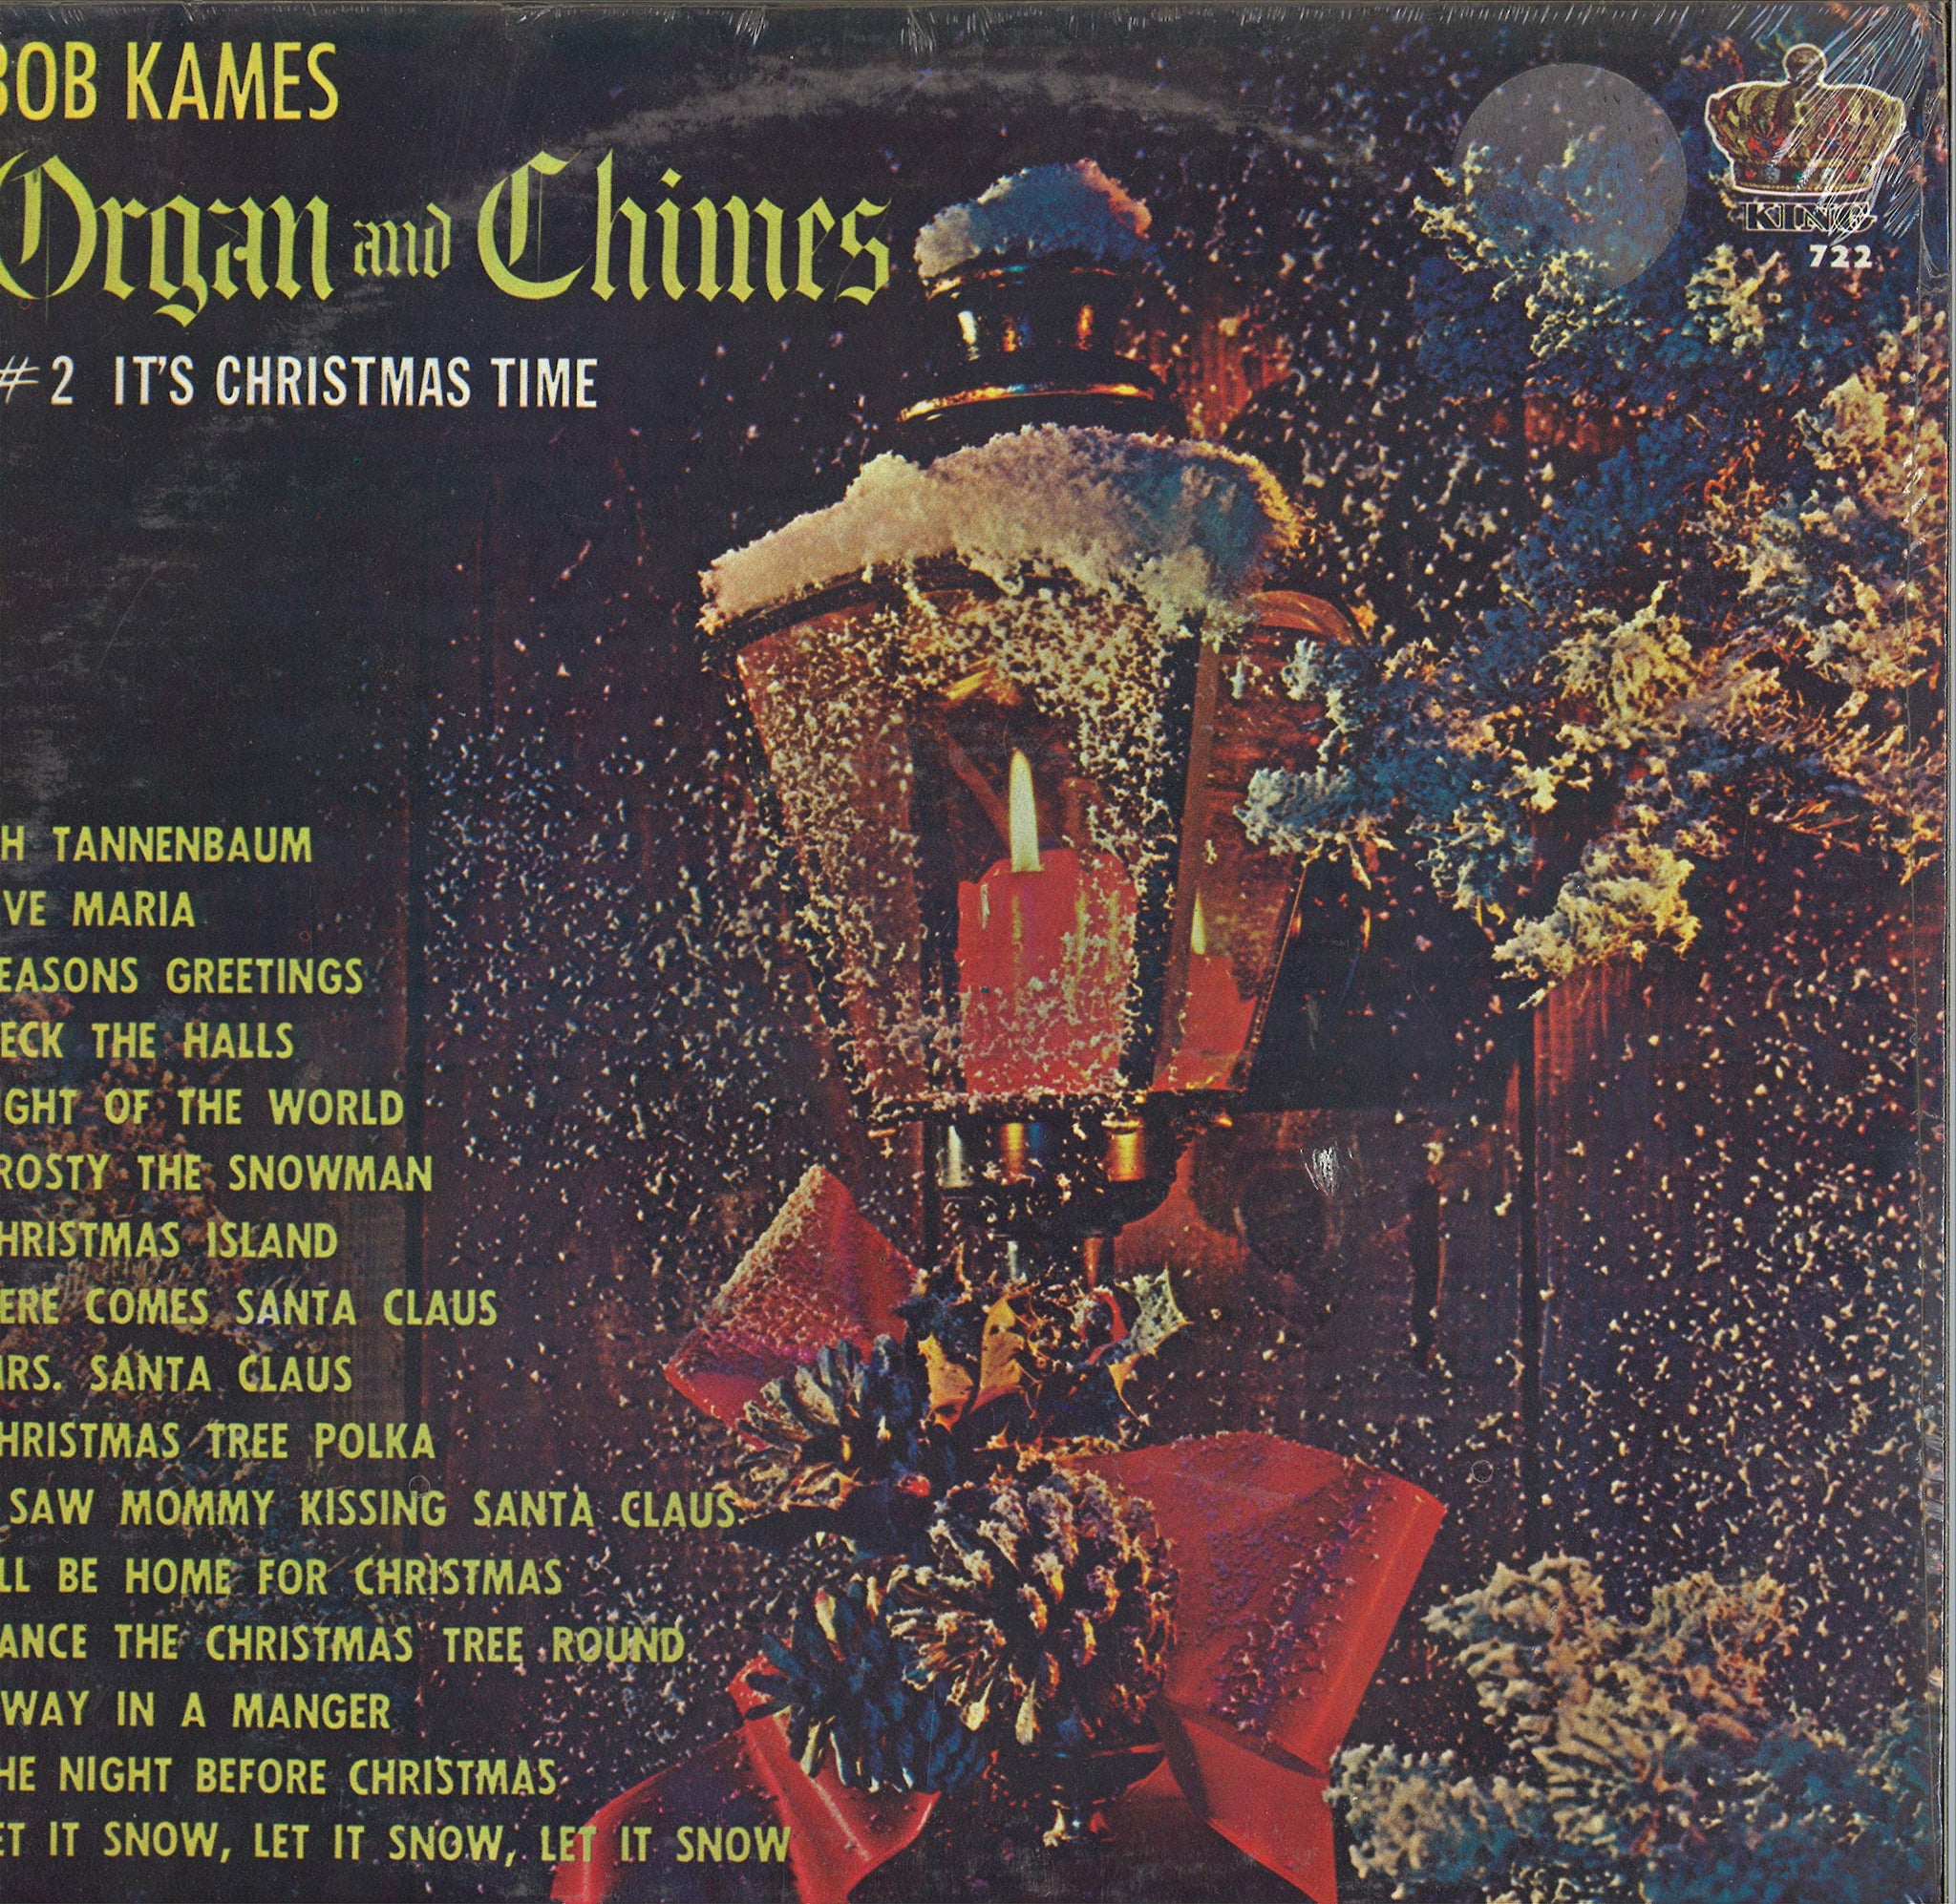 Bob Kames Organ and Chimes #2 - It's Christmas Time